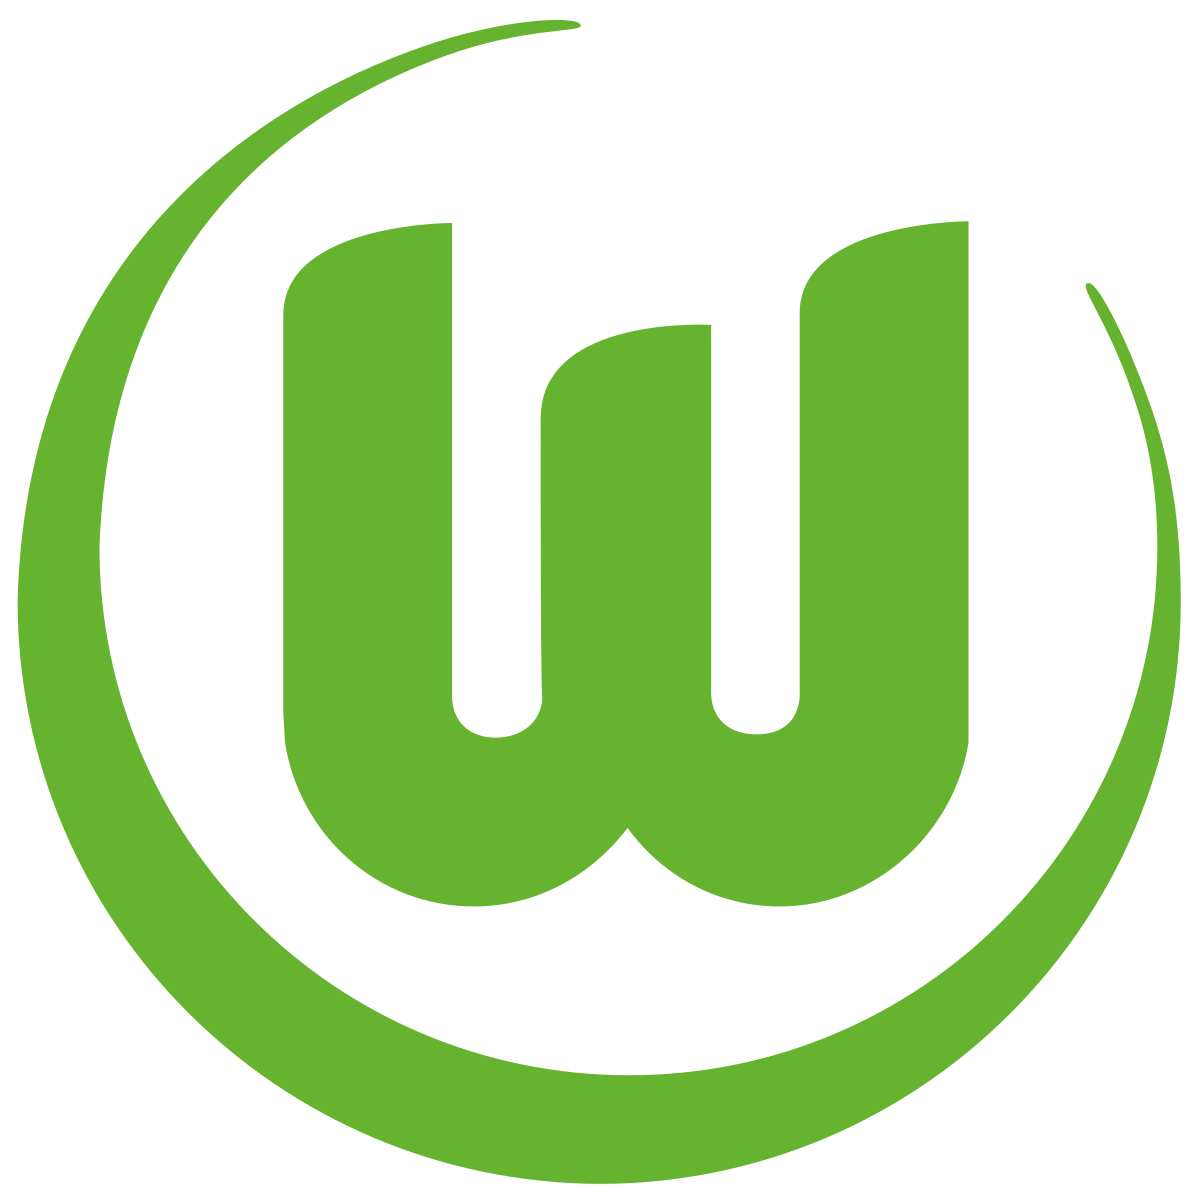 Partnersuche in Wolfsburg - Kontaktanzeigen und Singles ab 50